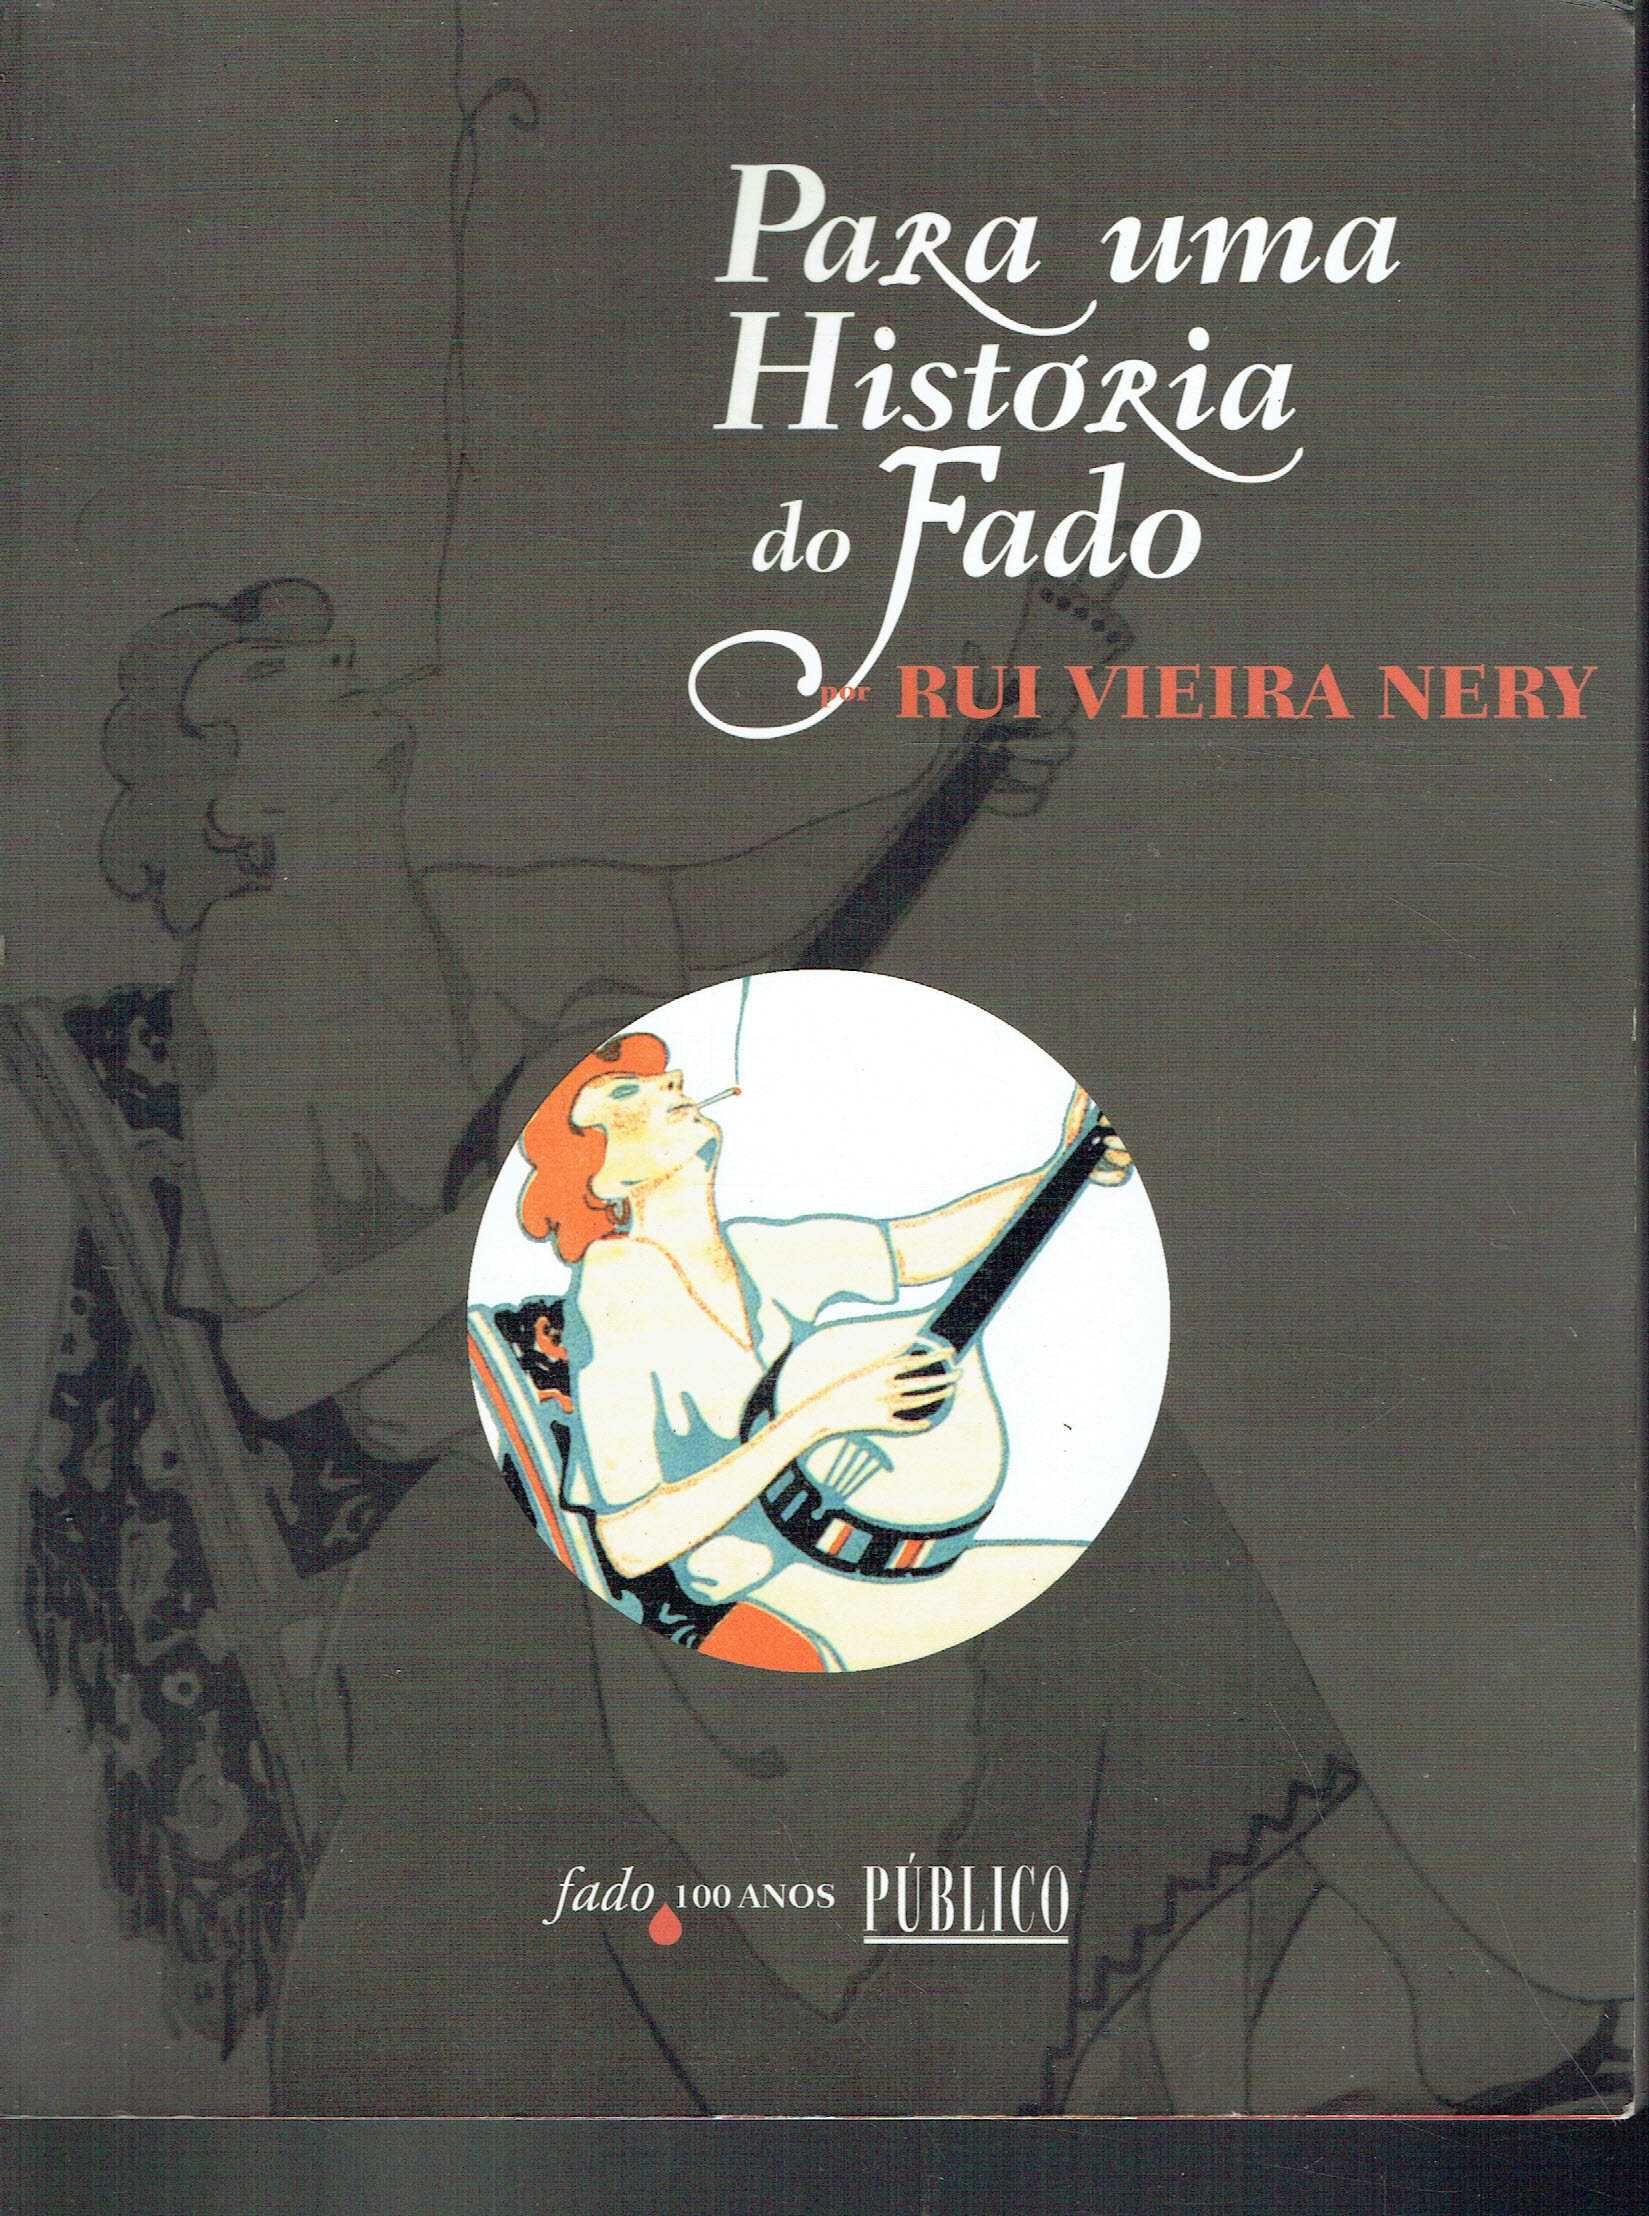 7526

Para uma História do Fado
de Rui Vieira Nery